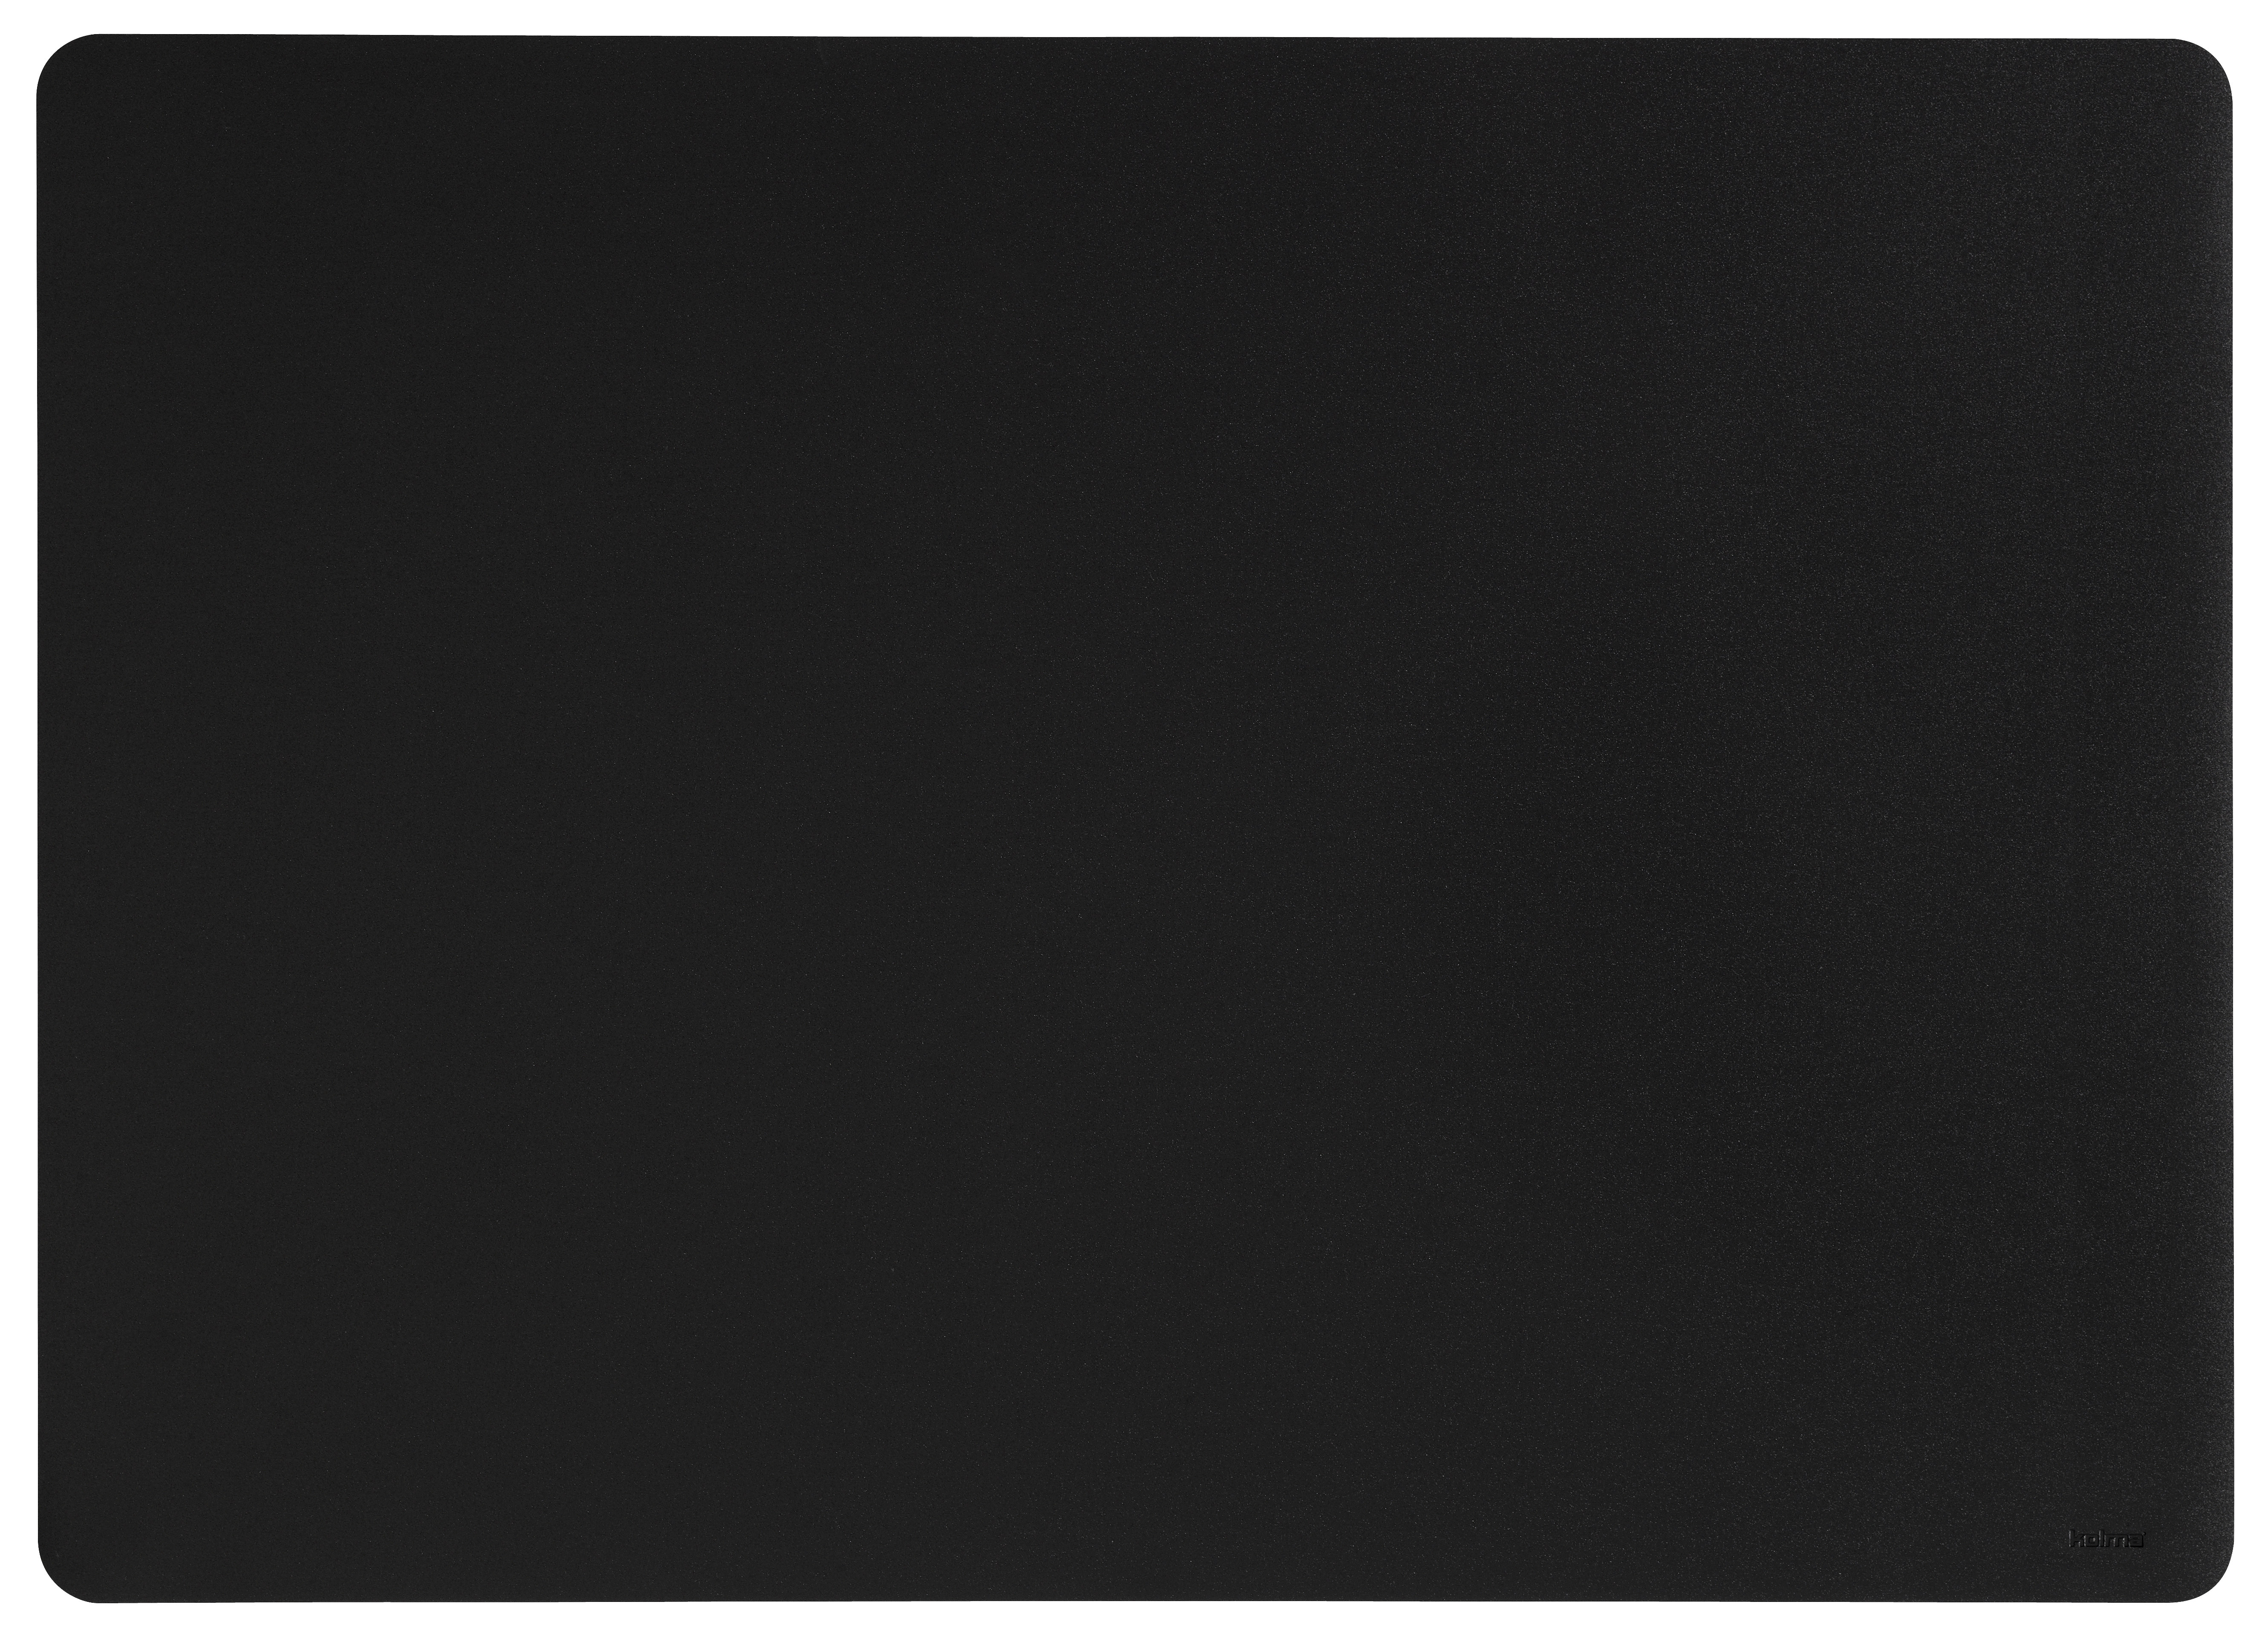 KOLMA Sous-main Selection 32.570.06 noir 70x50cm